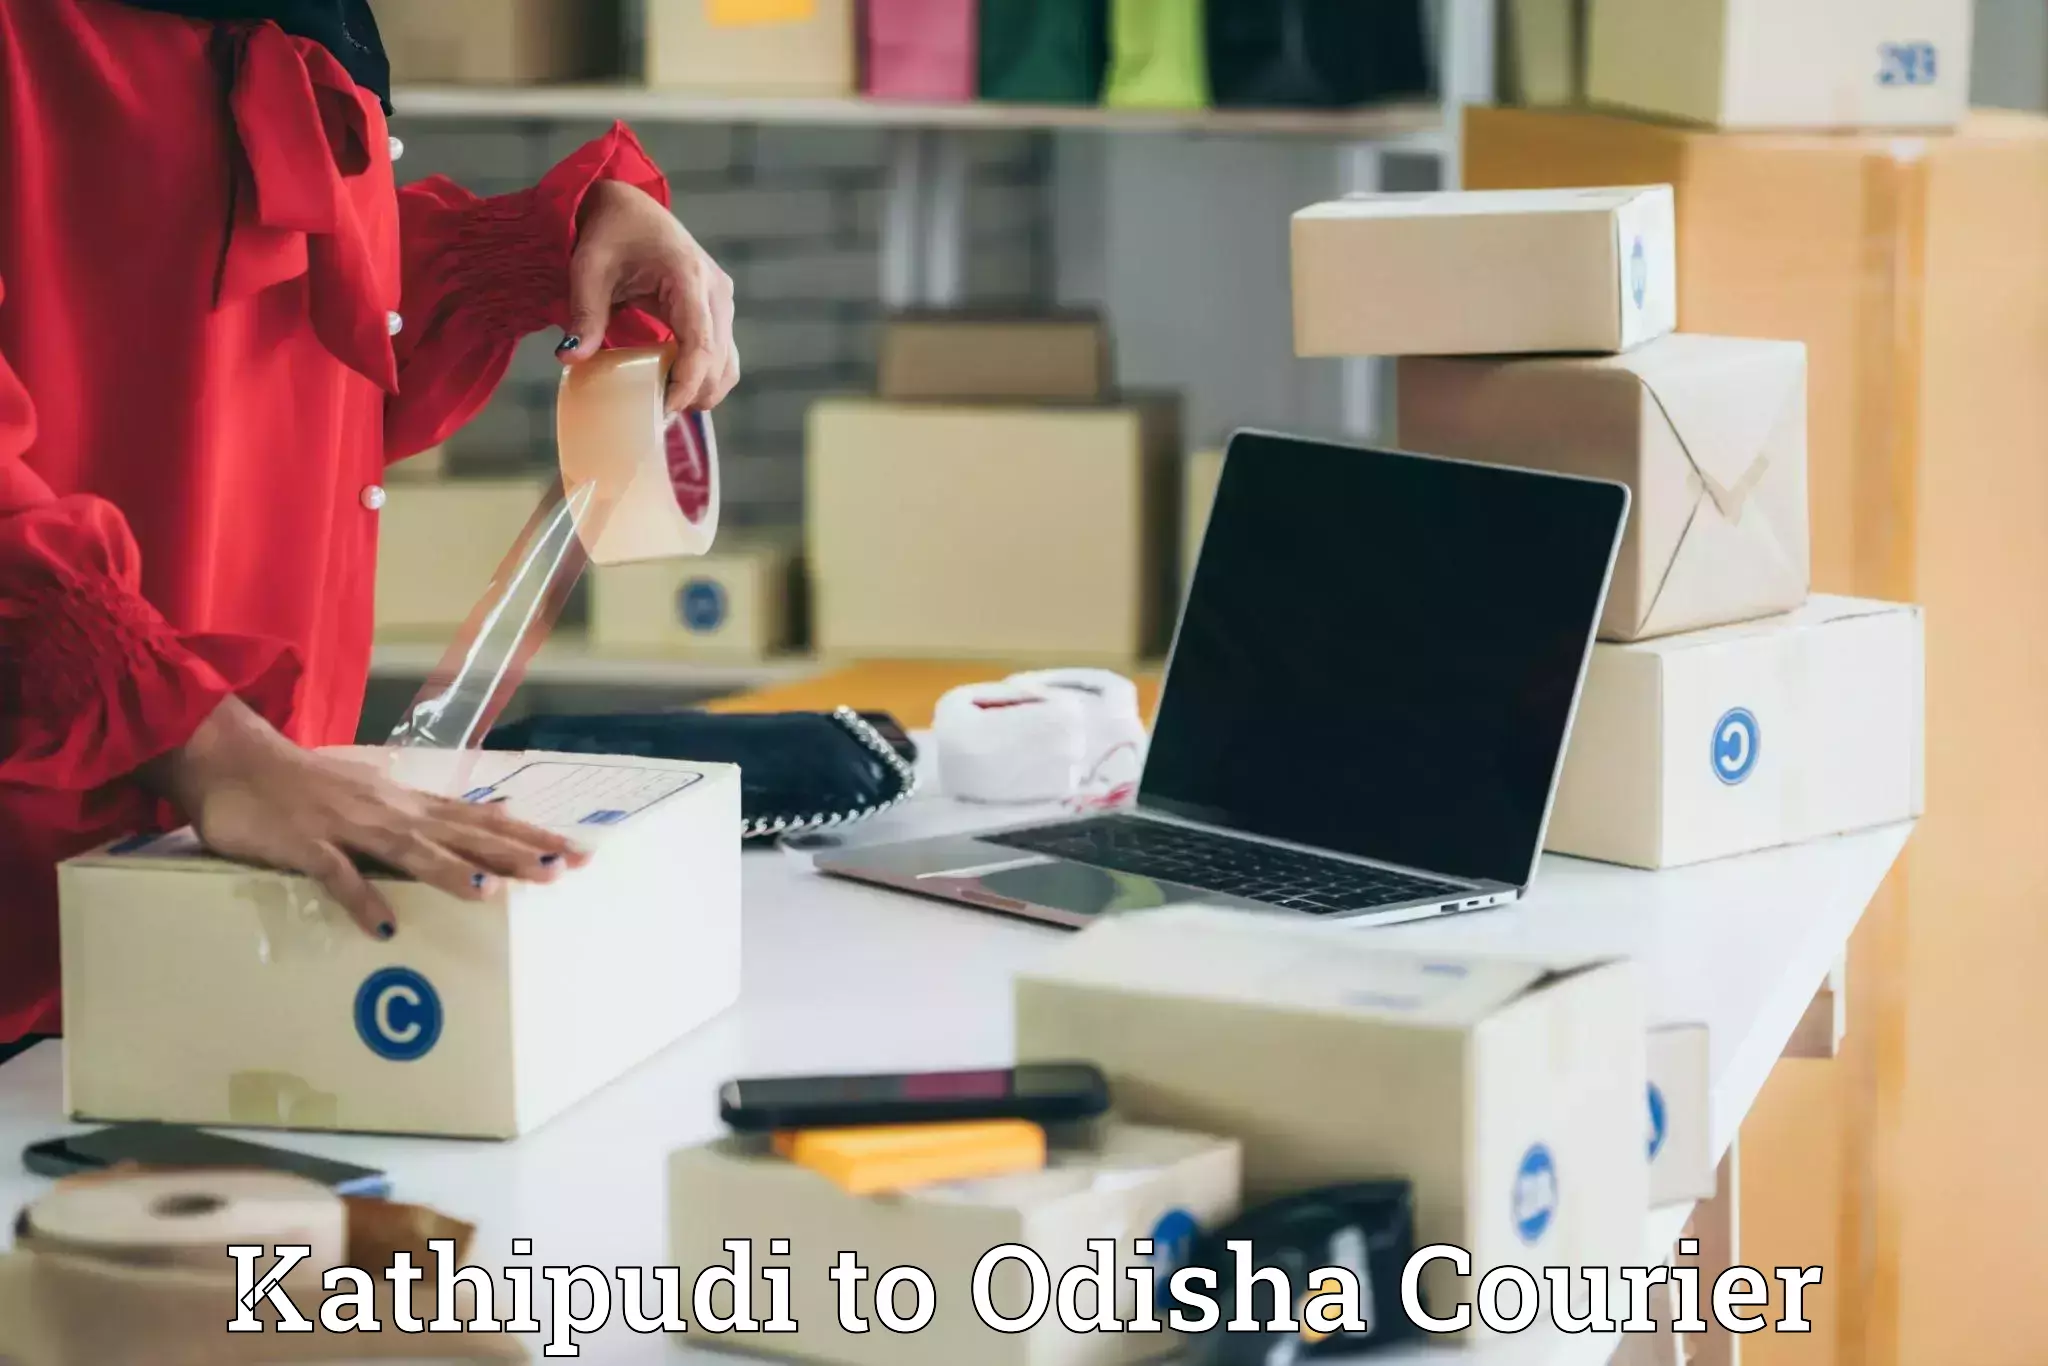 Pharmaceutical courier Kathipudi to Odisha